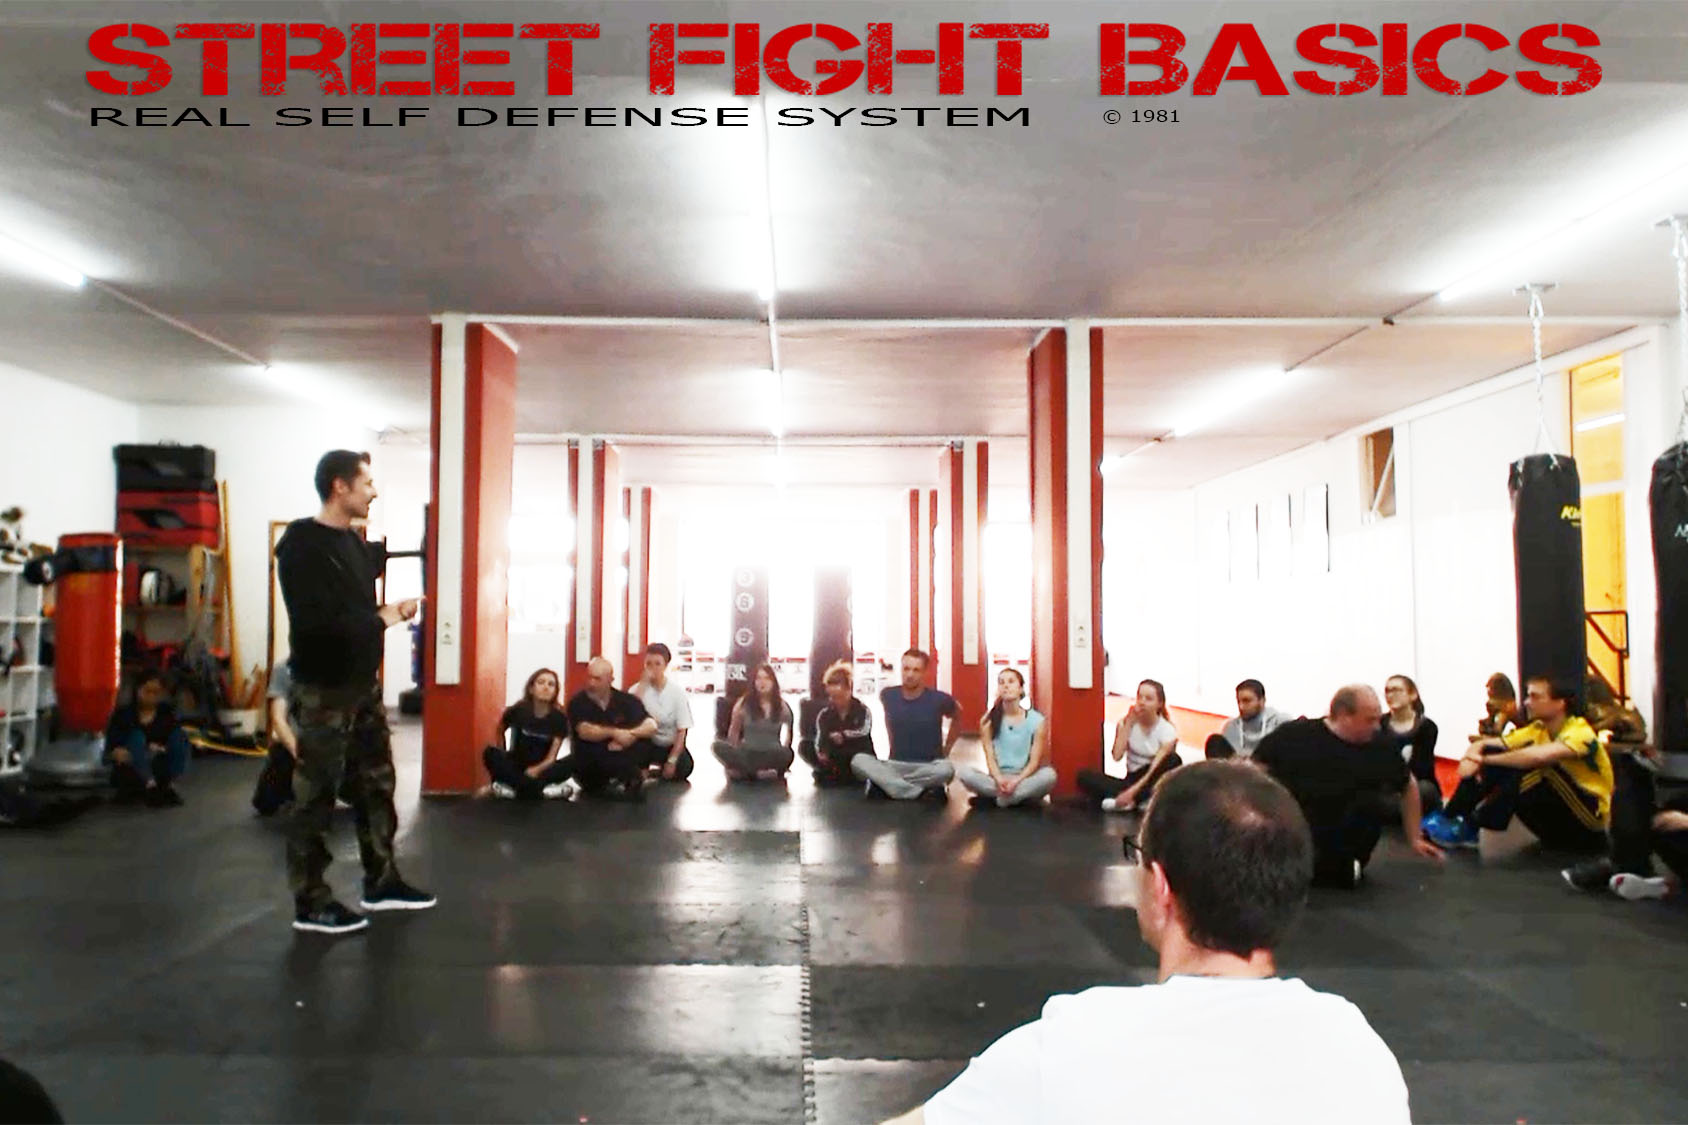 Street Fight Basics Realistische Selbstverteidigung München